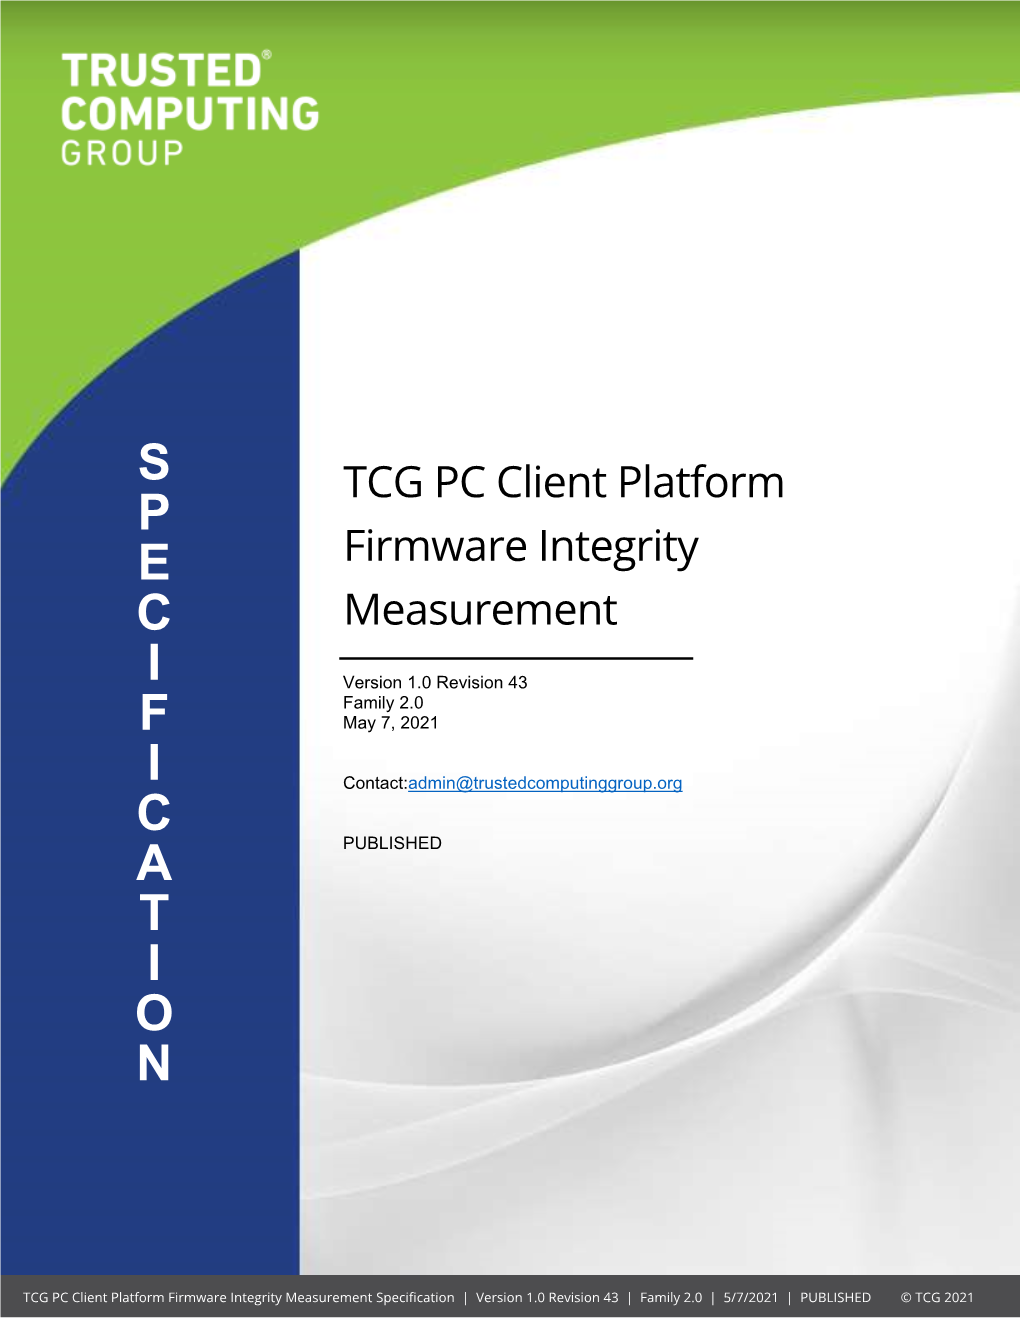 TCG PC Client Platform Firmware Integrity Measurement Specification